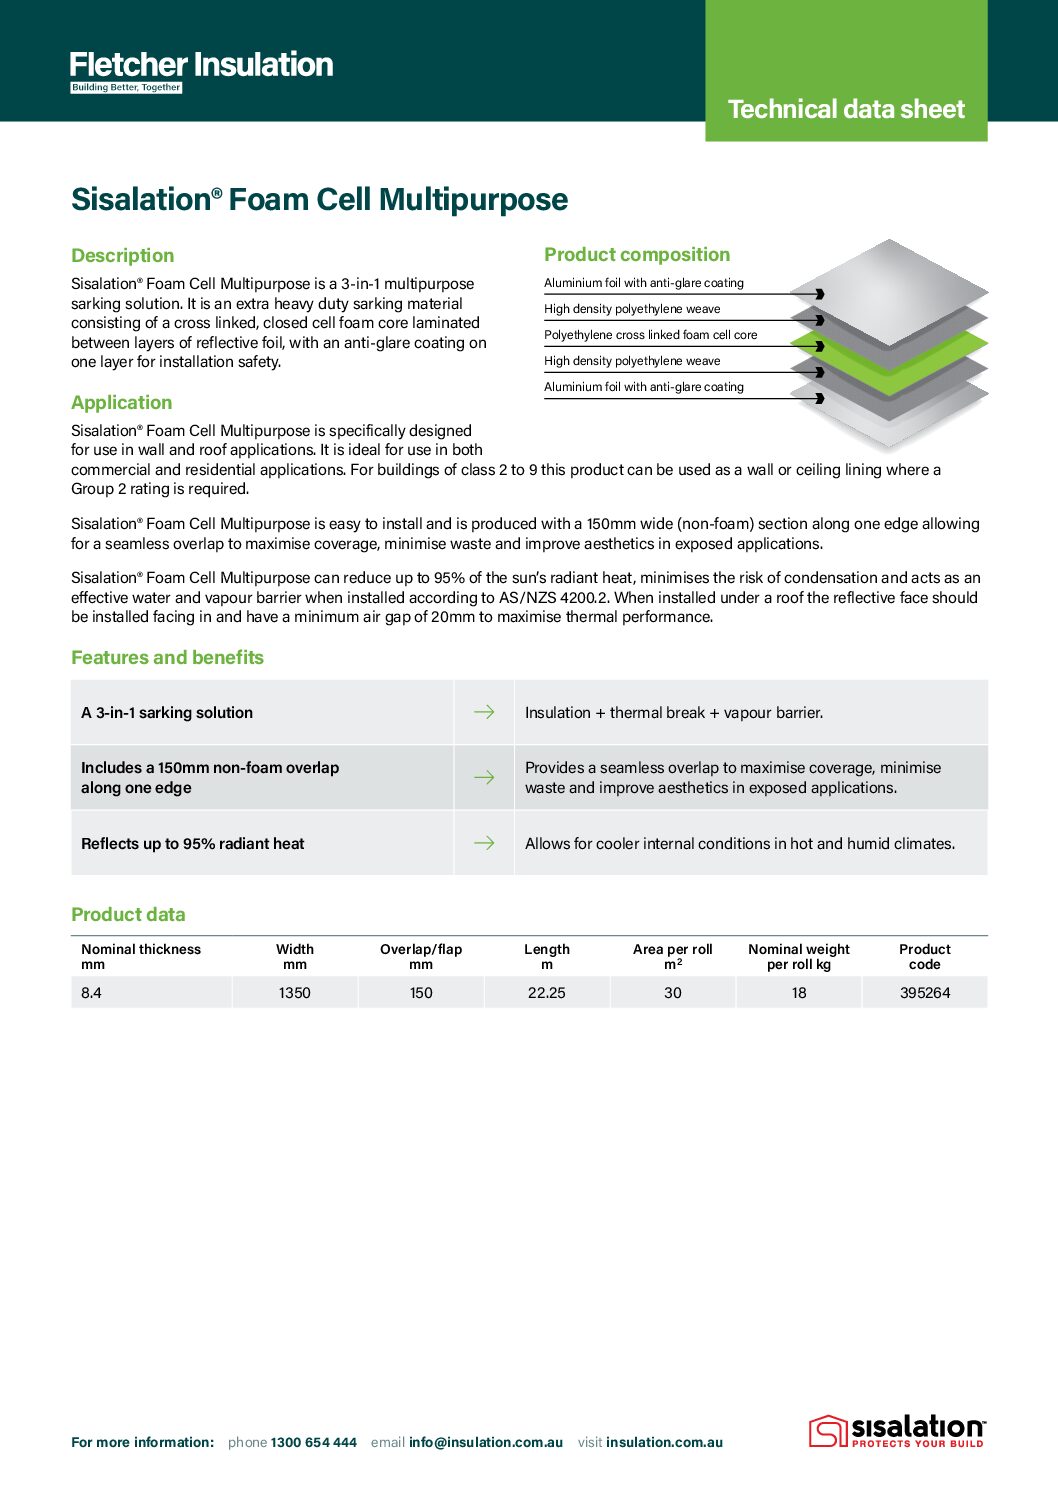 Sisalation® Foam Cell Multipurpose Technical Data Sheet